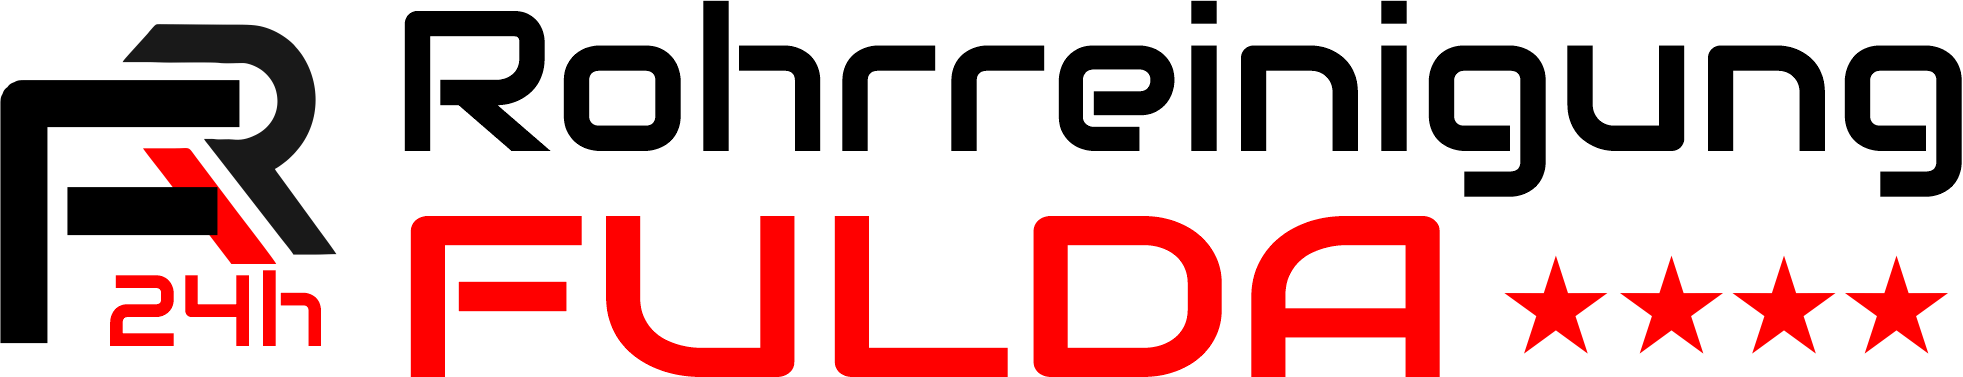 Rohrreinigung Fulda Logo